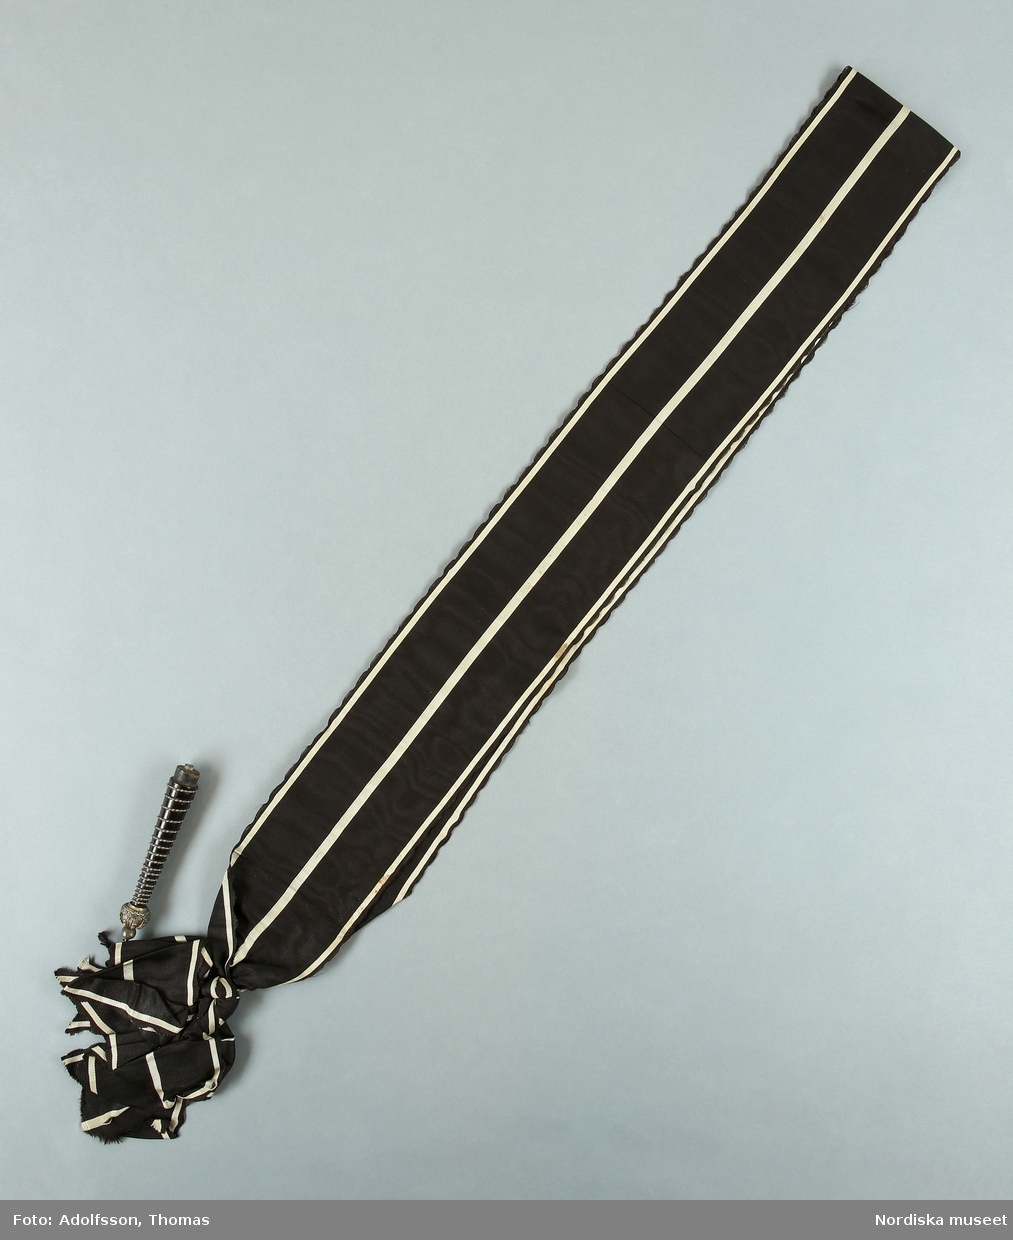 Huvudliggaren 1896:
"d. L. 0,13 Battong af svart trä, lindad med hvit metalltråd samt med kunglig krona af hvit metall.
I svart sidenmoaréband med hvita ränder. Bars öfver axeln."